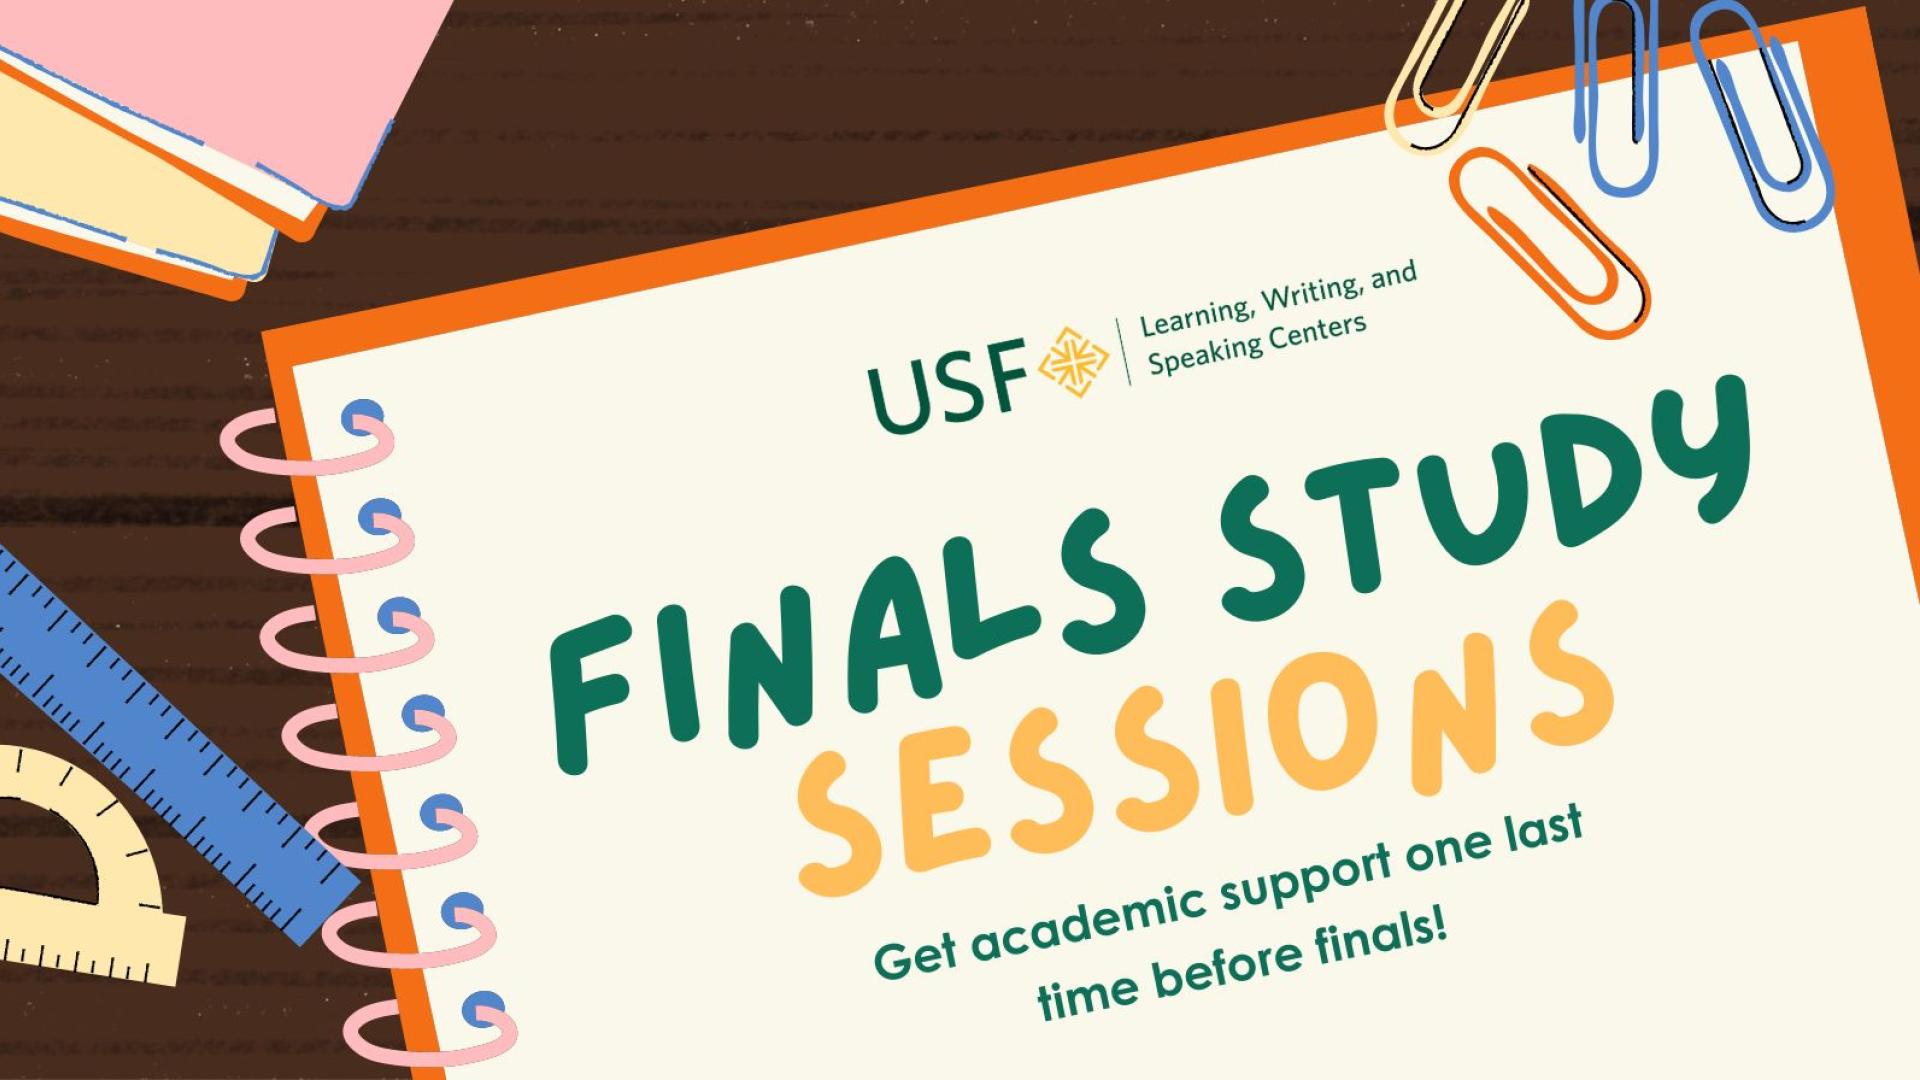 LWSC’s Finals Study Sessions